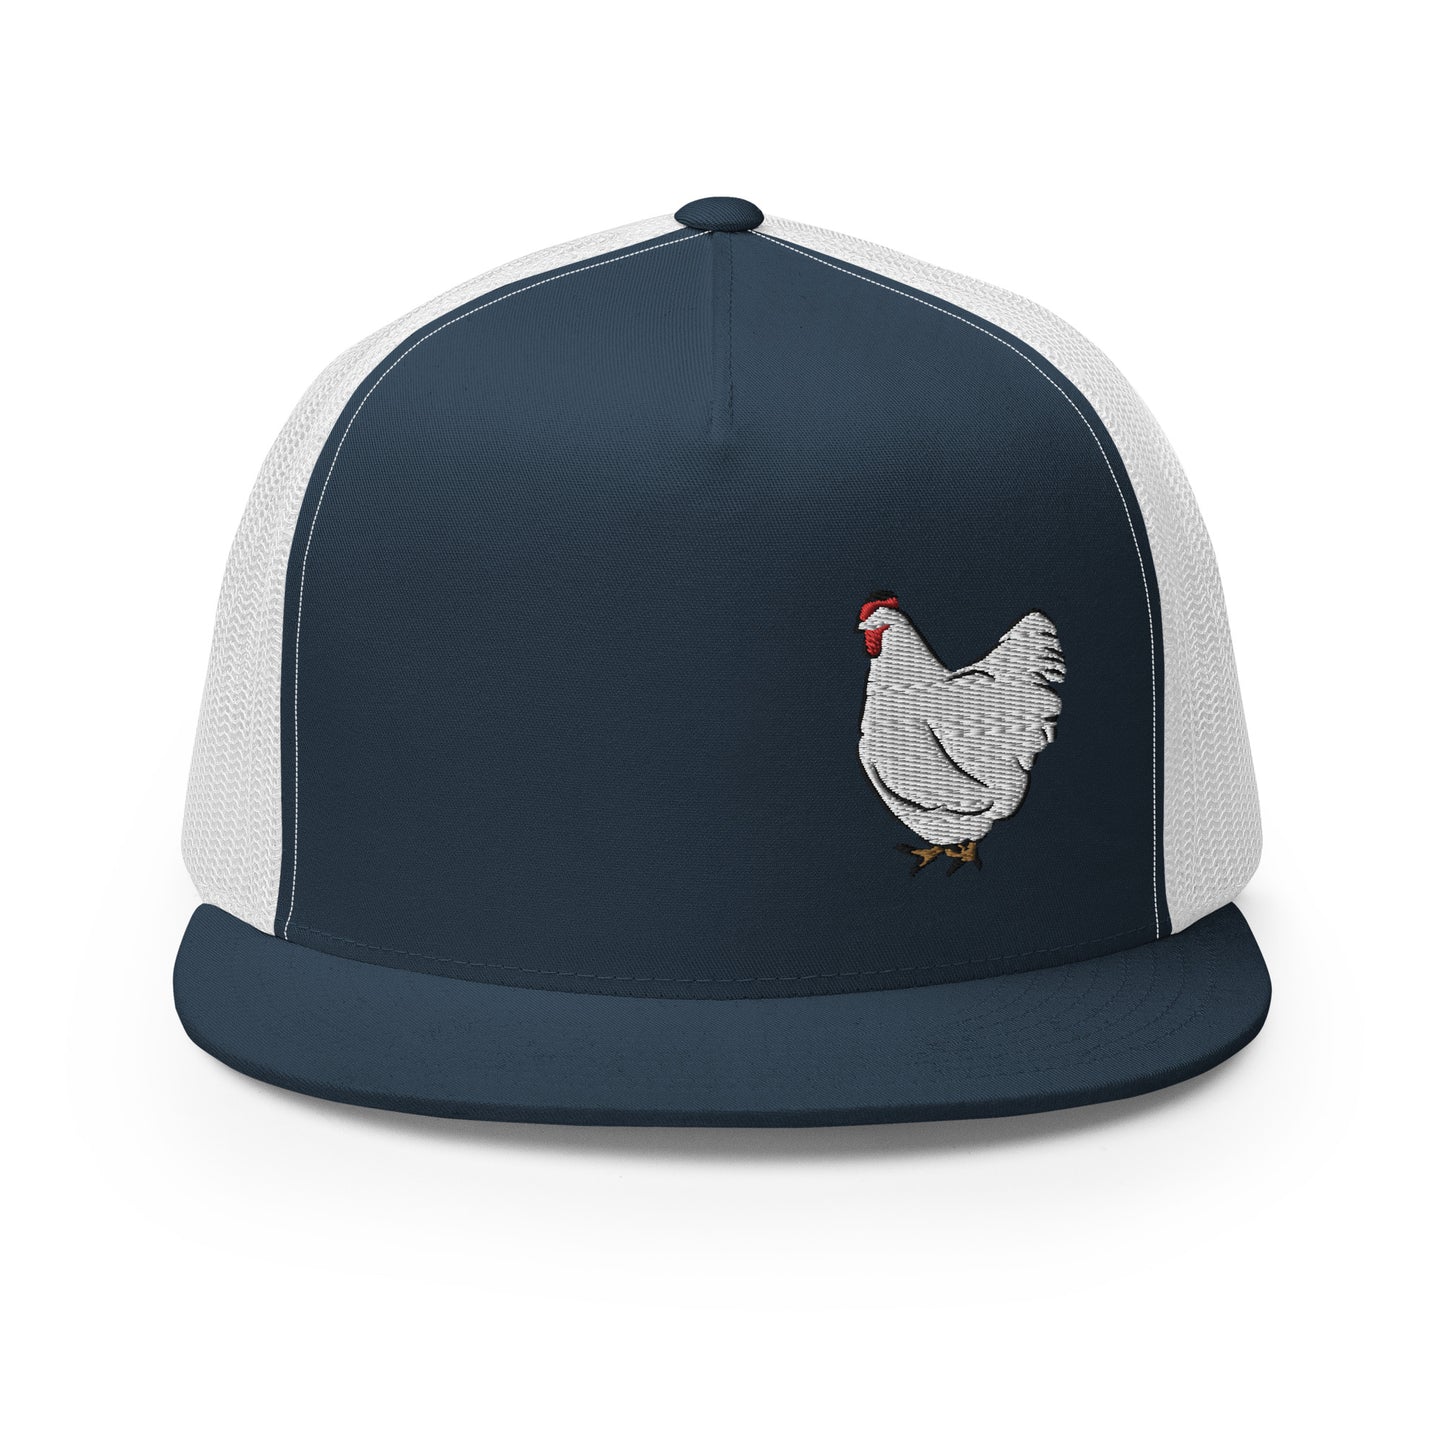 White chicken Trucker Cap| hat